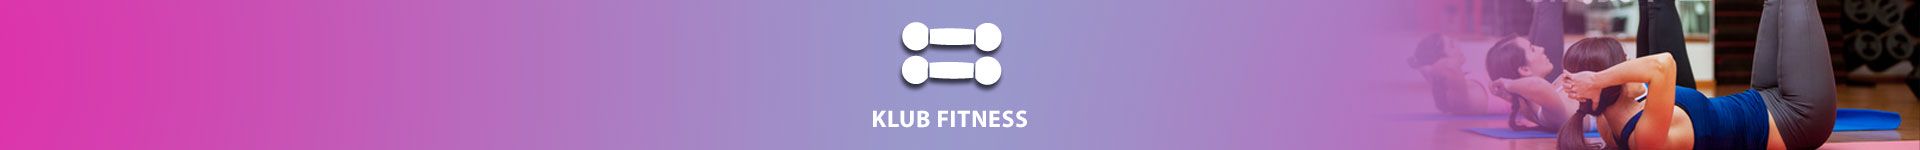 klub fitness